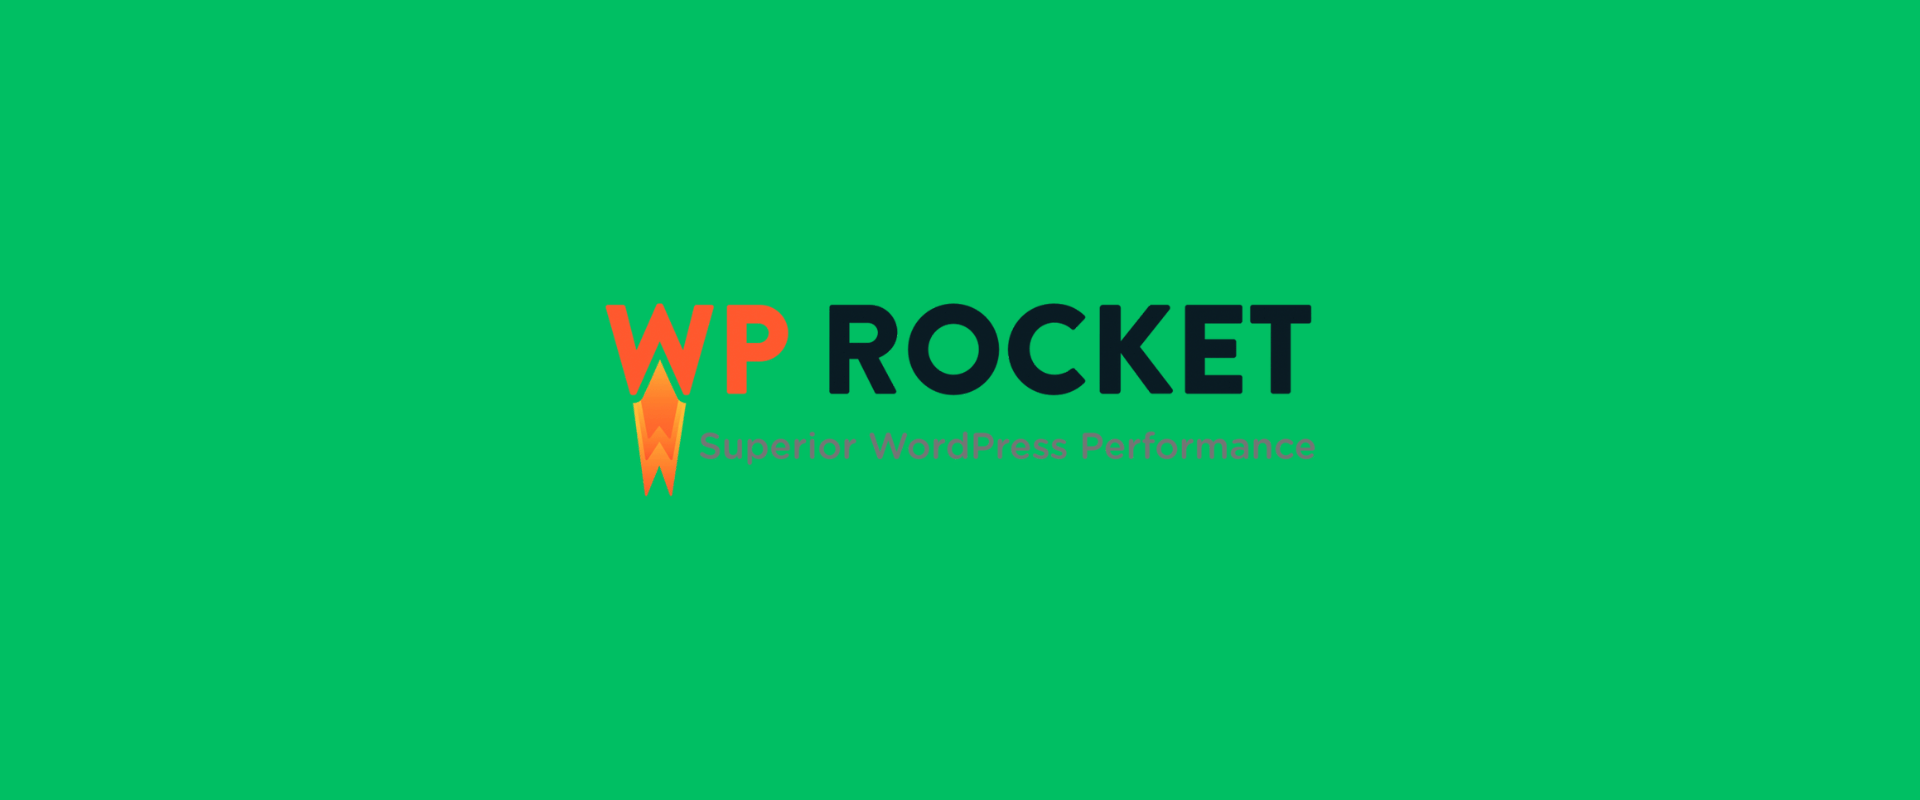 WPRocket alternatives- Why Consider WP Rocket Alternatives